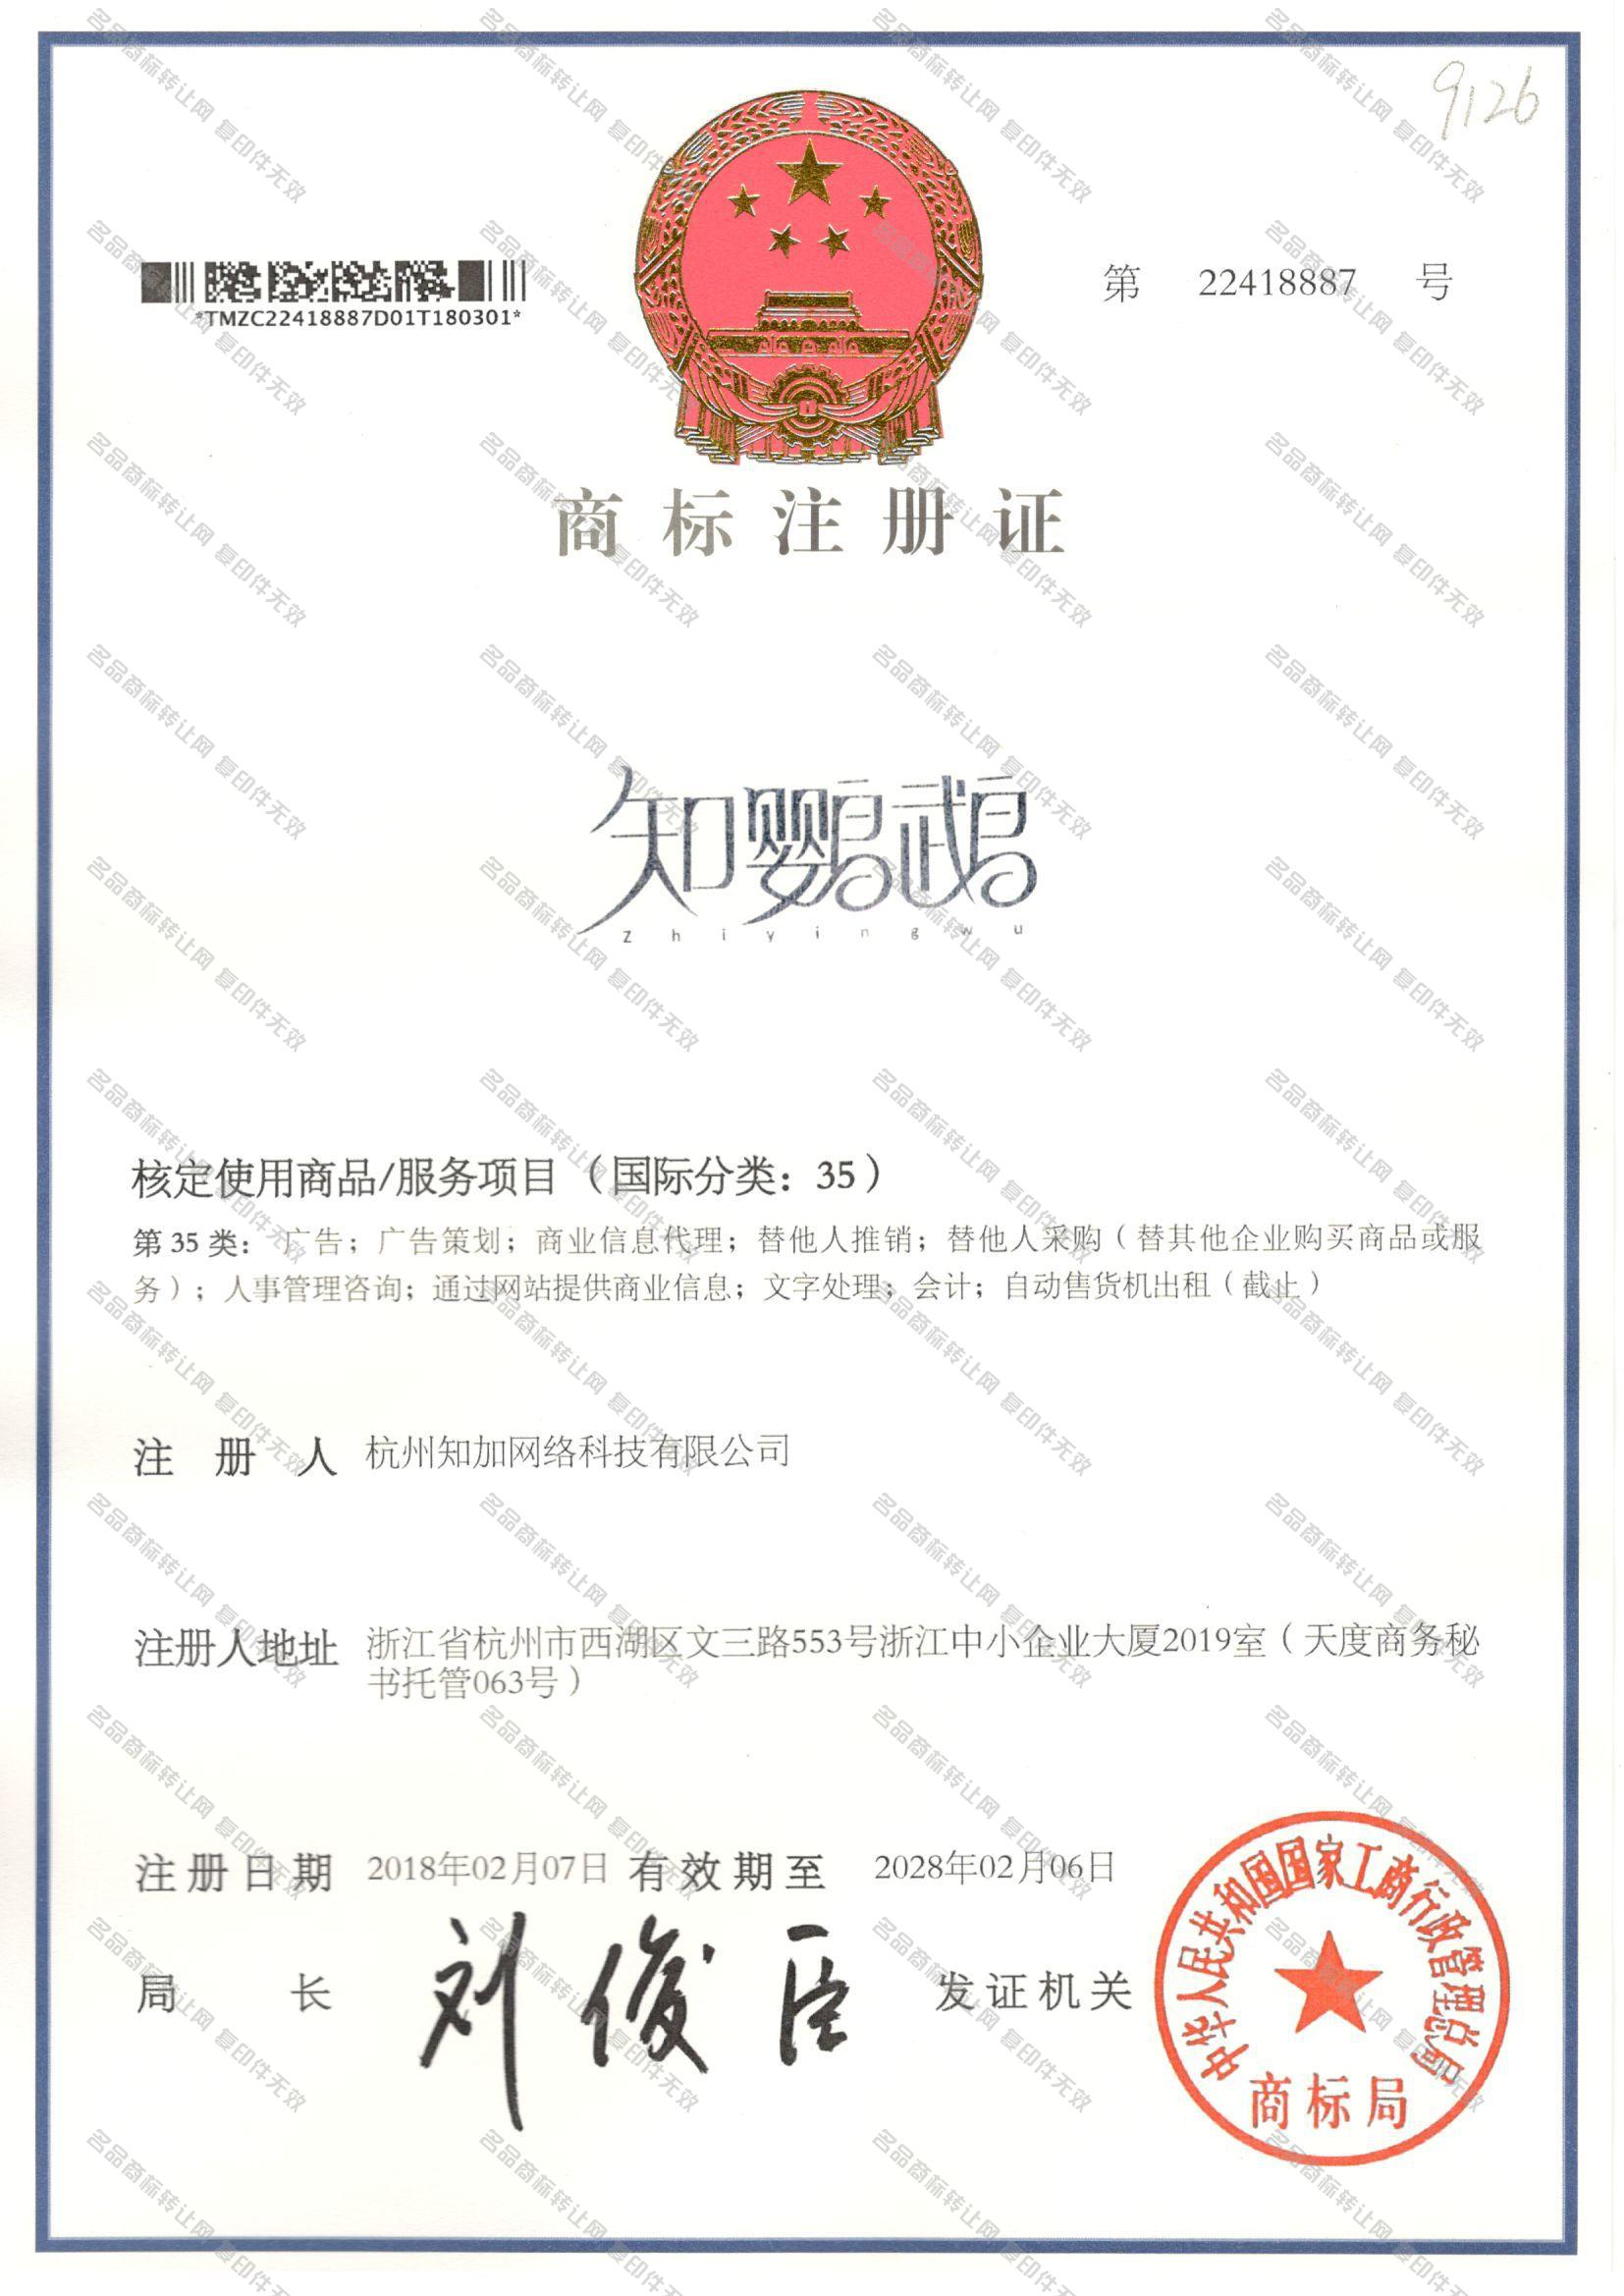 知鹦鹉 ZHIYINGWU注册证